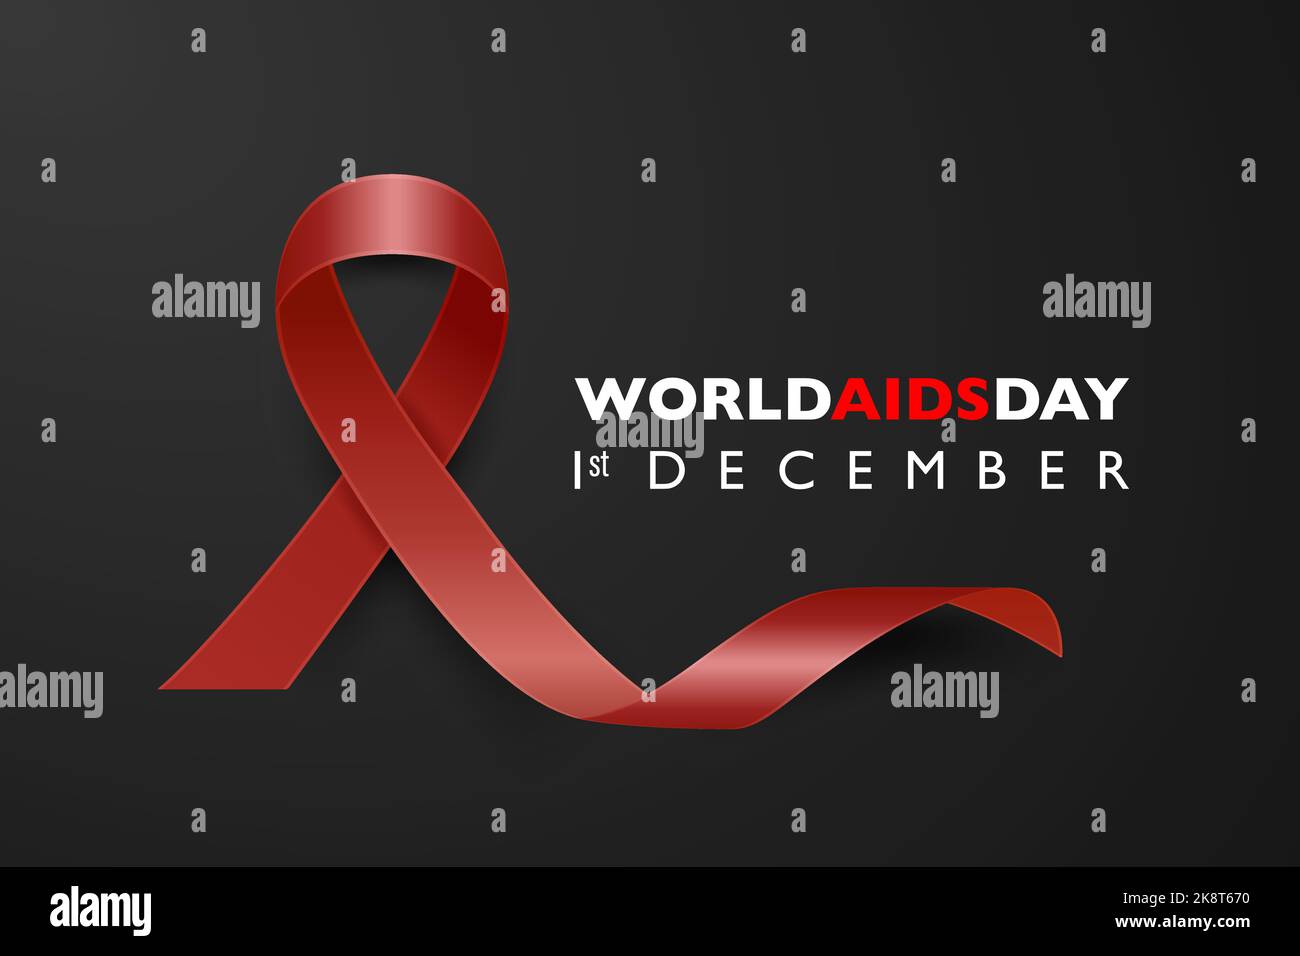 Welt-AIDS-Tag-Banner - AIDS-Bewusstsein rotes Seidenband auf schwarzem horizontalen Hintergrund. Aids Day-Konzept. Design-Vorlage für 1. Dezember Poster Stock Vektor